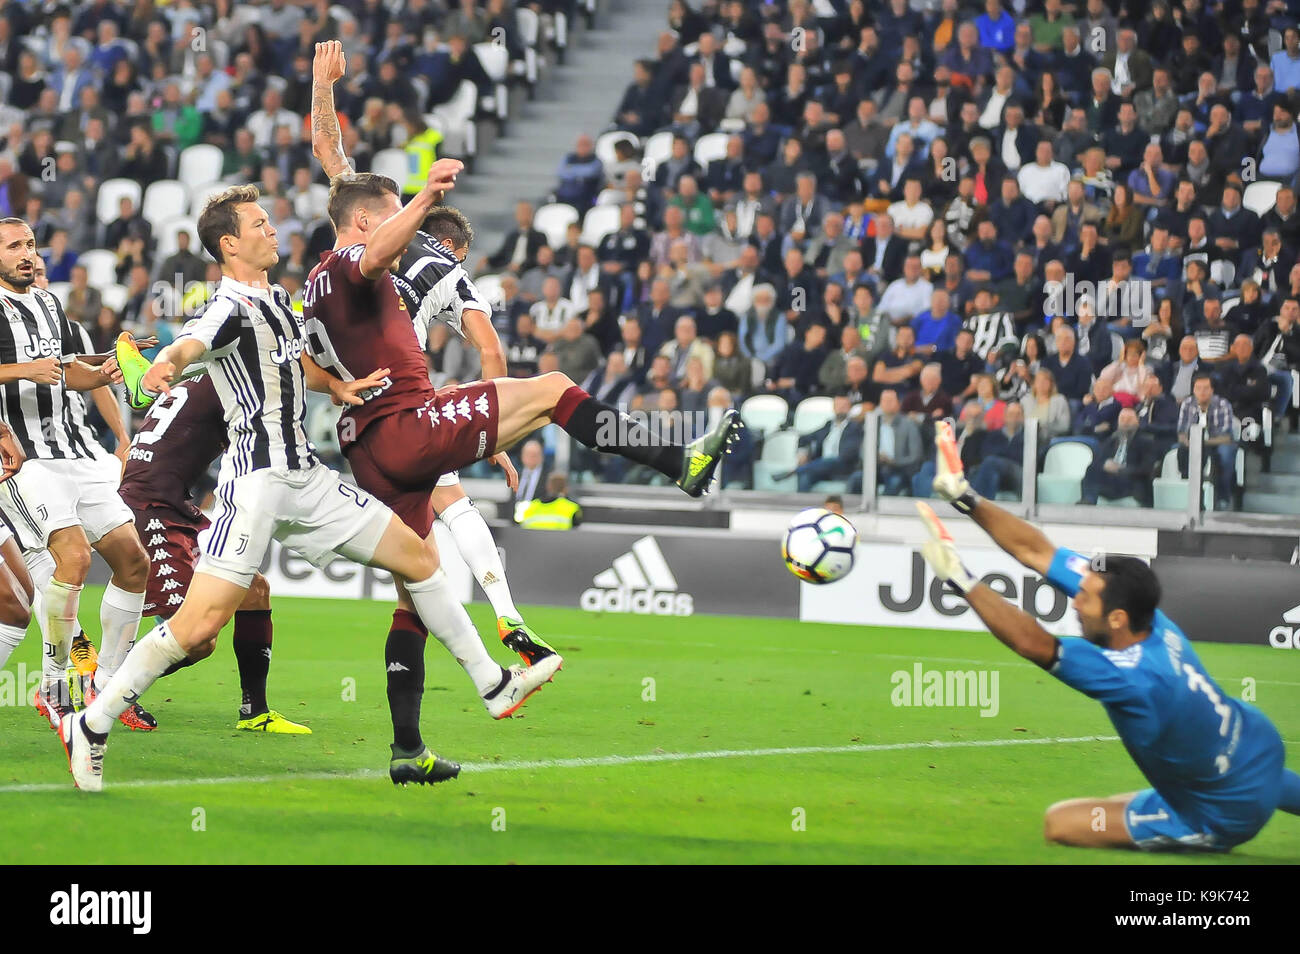 Andrea belotti (torino fc) au cours de la série d'un match de football entre la Juventus Turin et au fc stade Allianz le 23 septembre 2017 à Turin, Italie. Banque D'Images